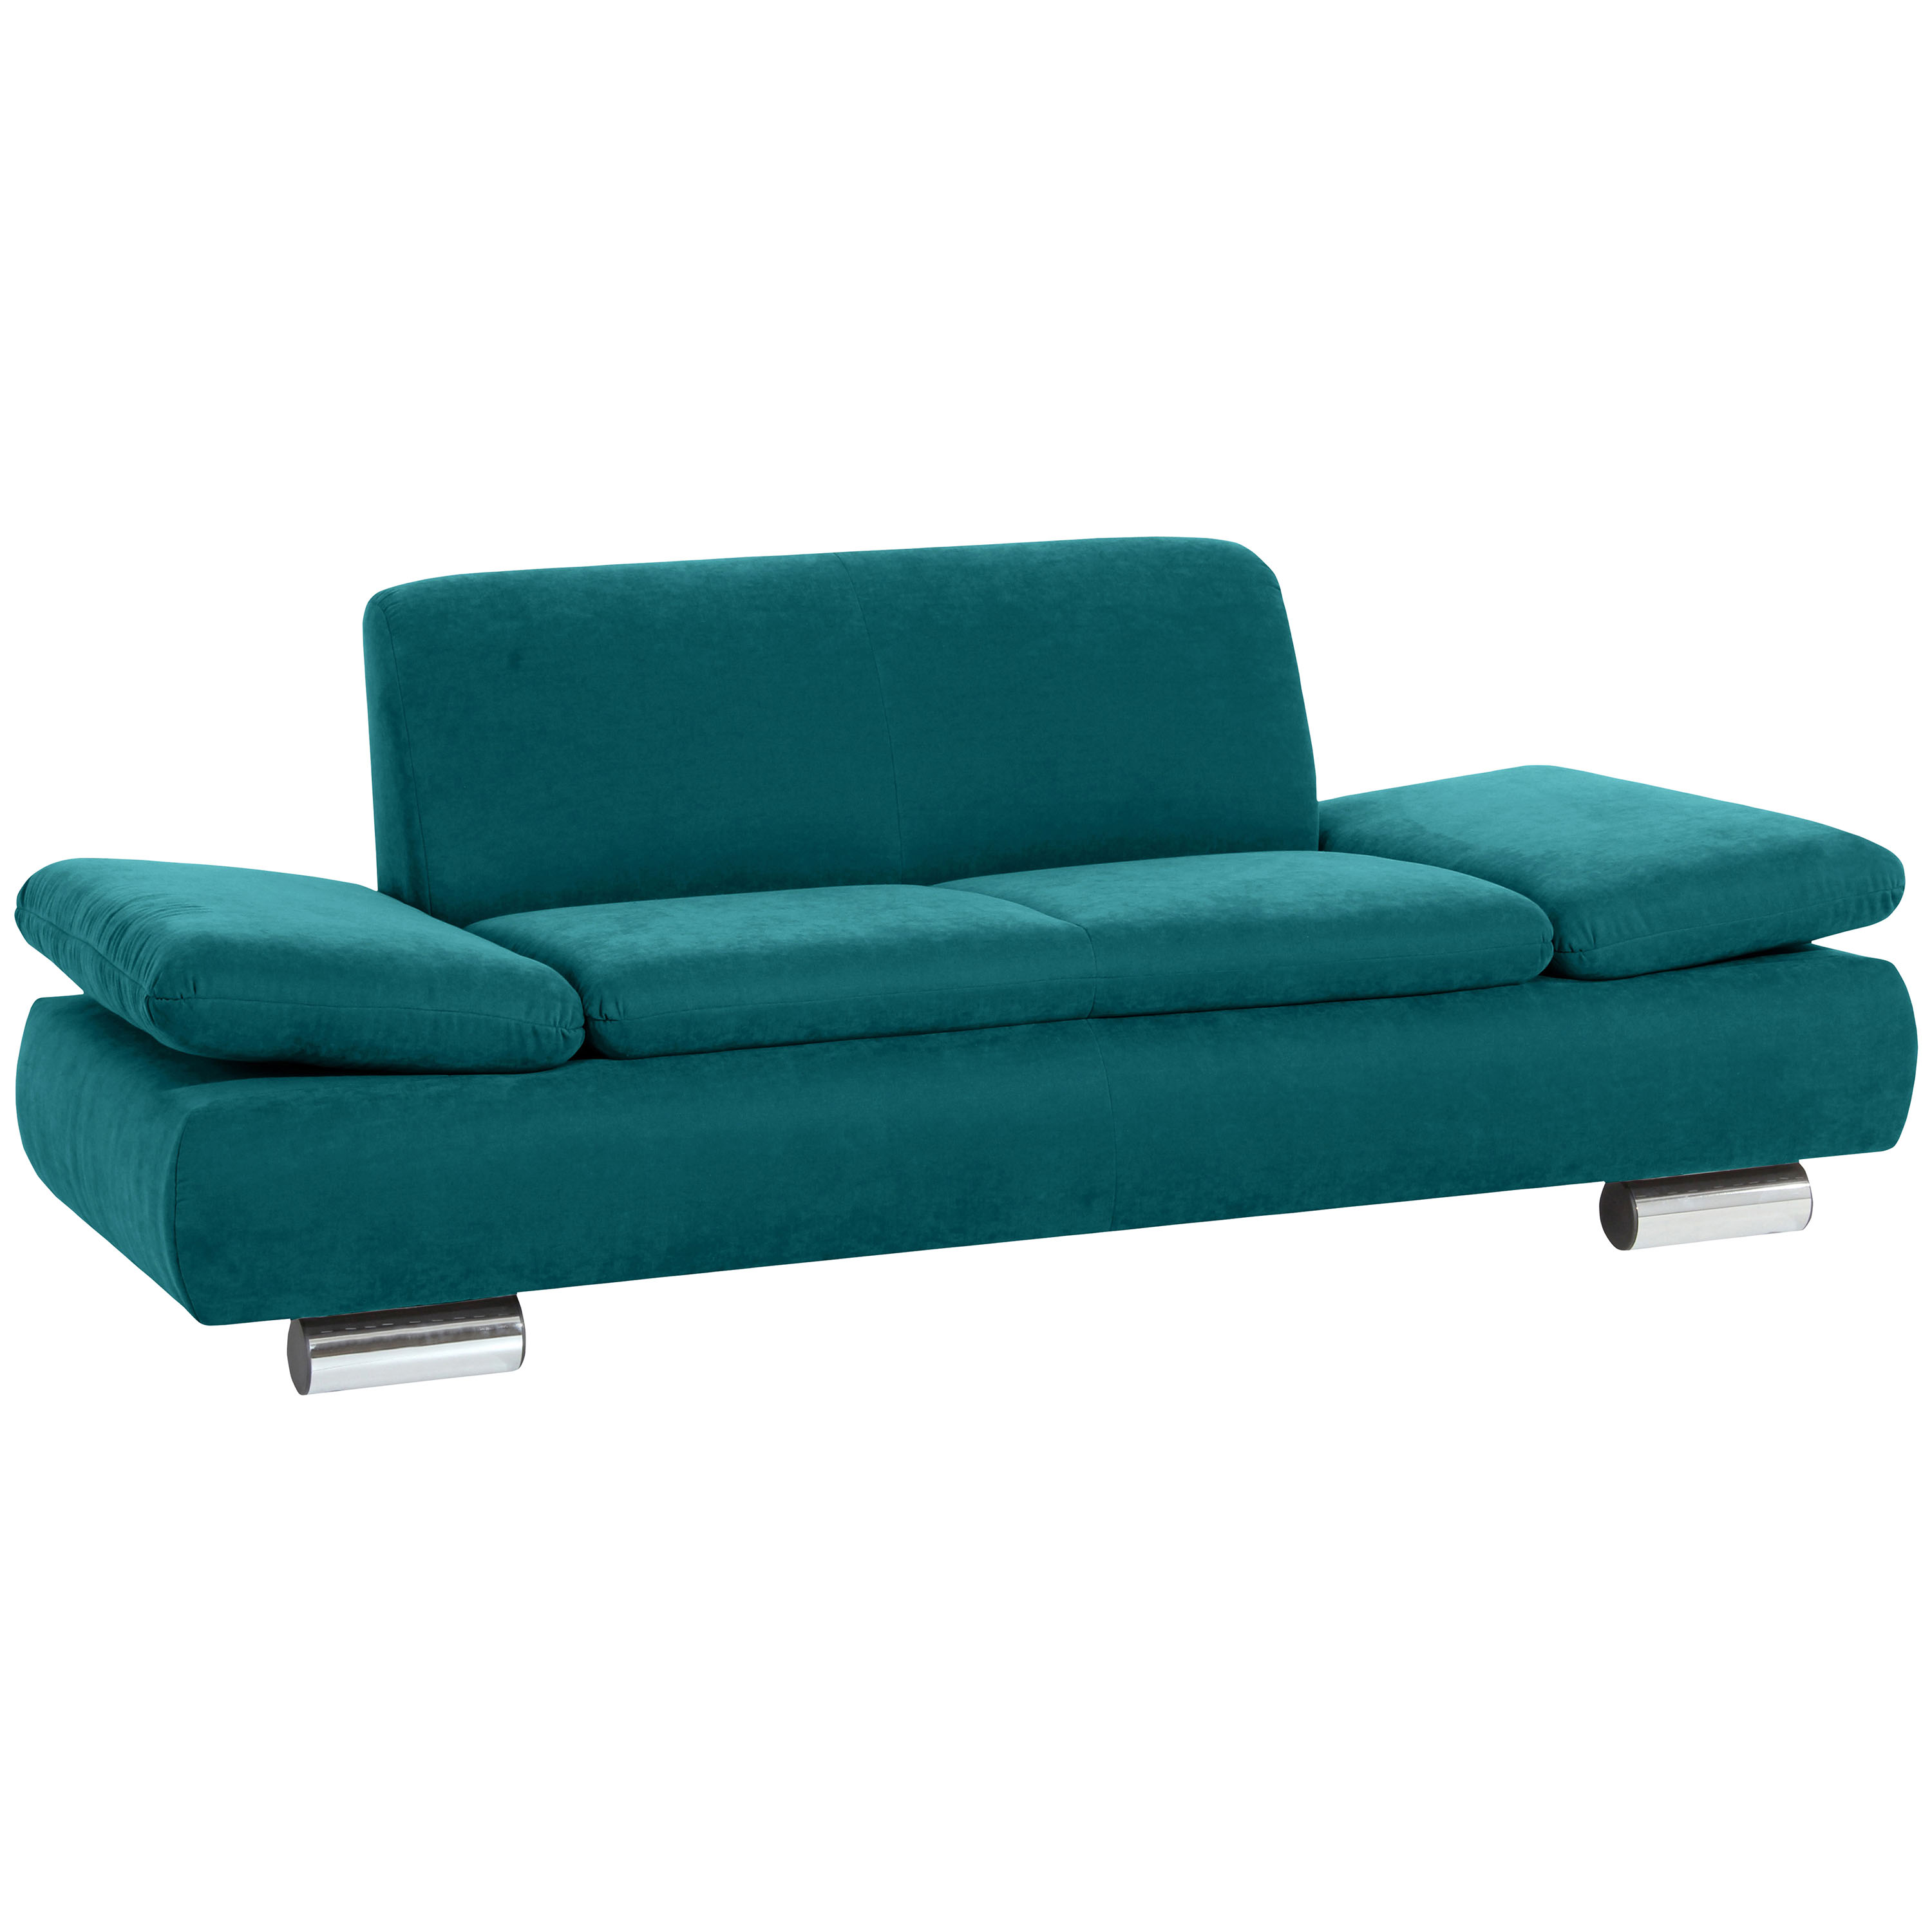 formschönes 2-sitzer sofa in petrol  mit verchromten metallfüßen 